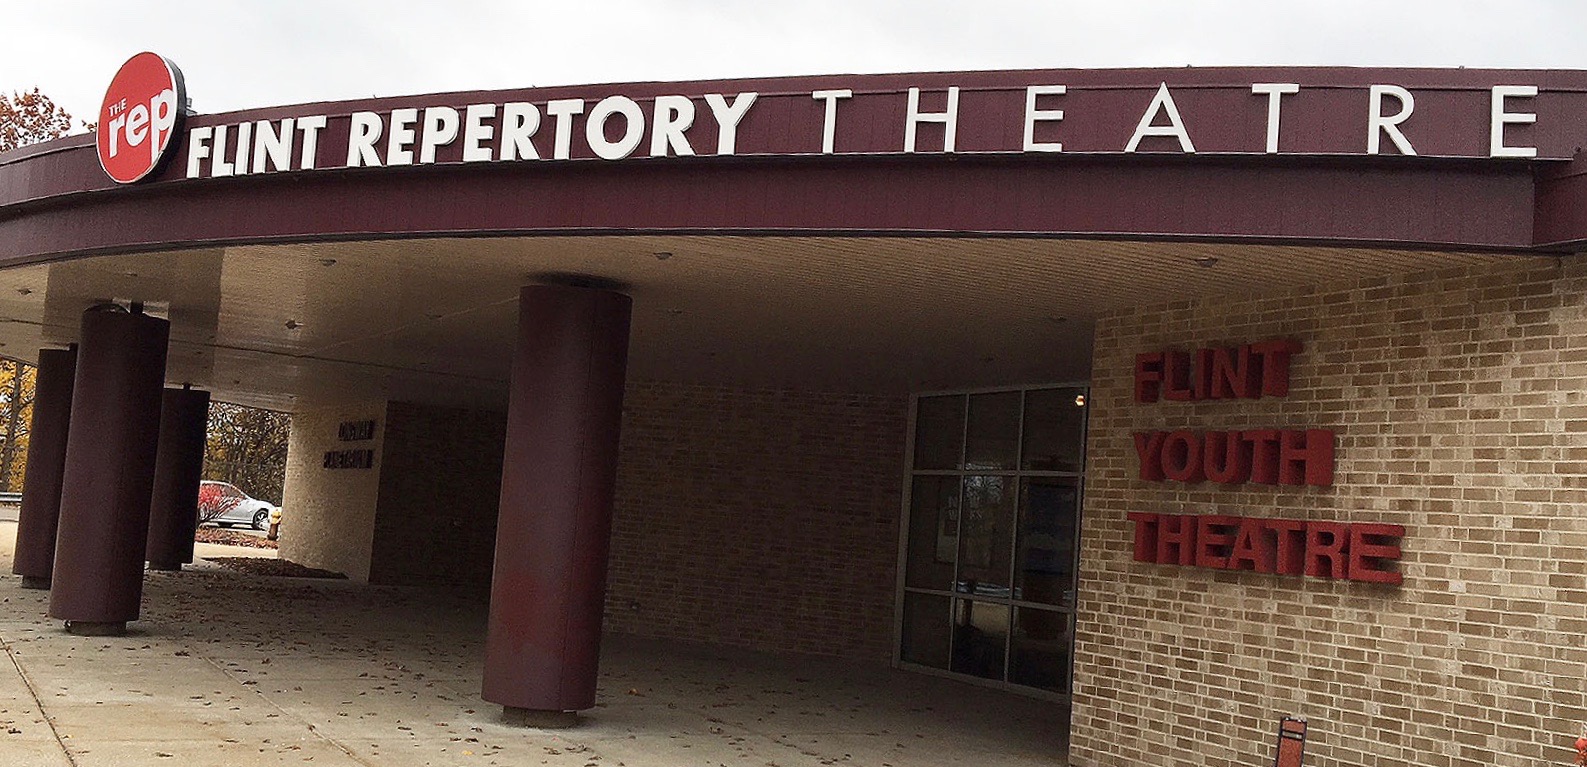 Flint Repertory Theatre set to debut 'The Magnificent Seven